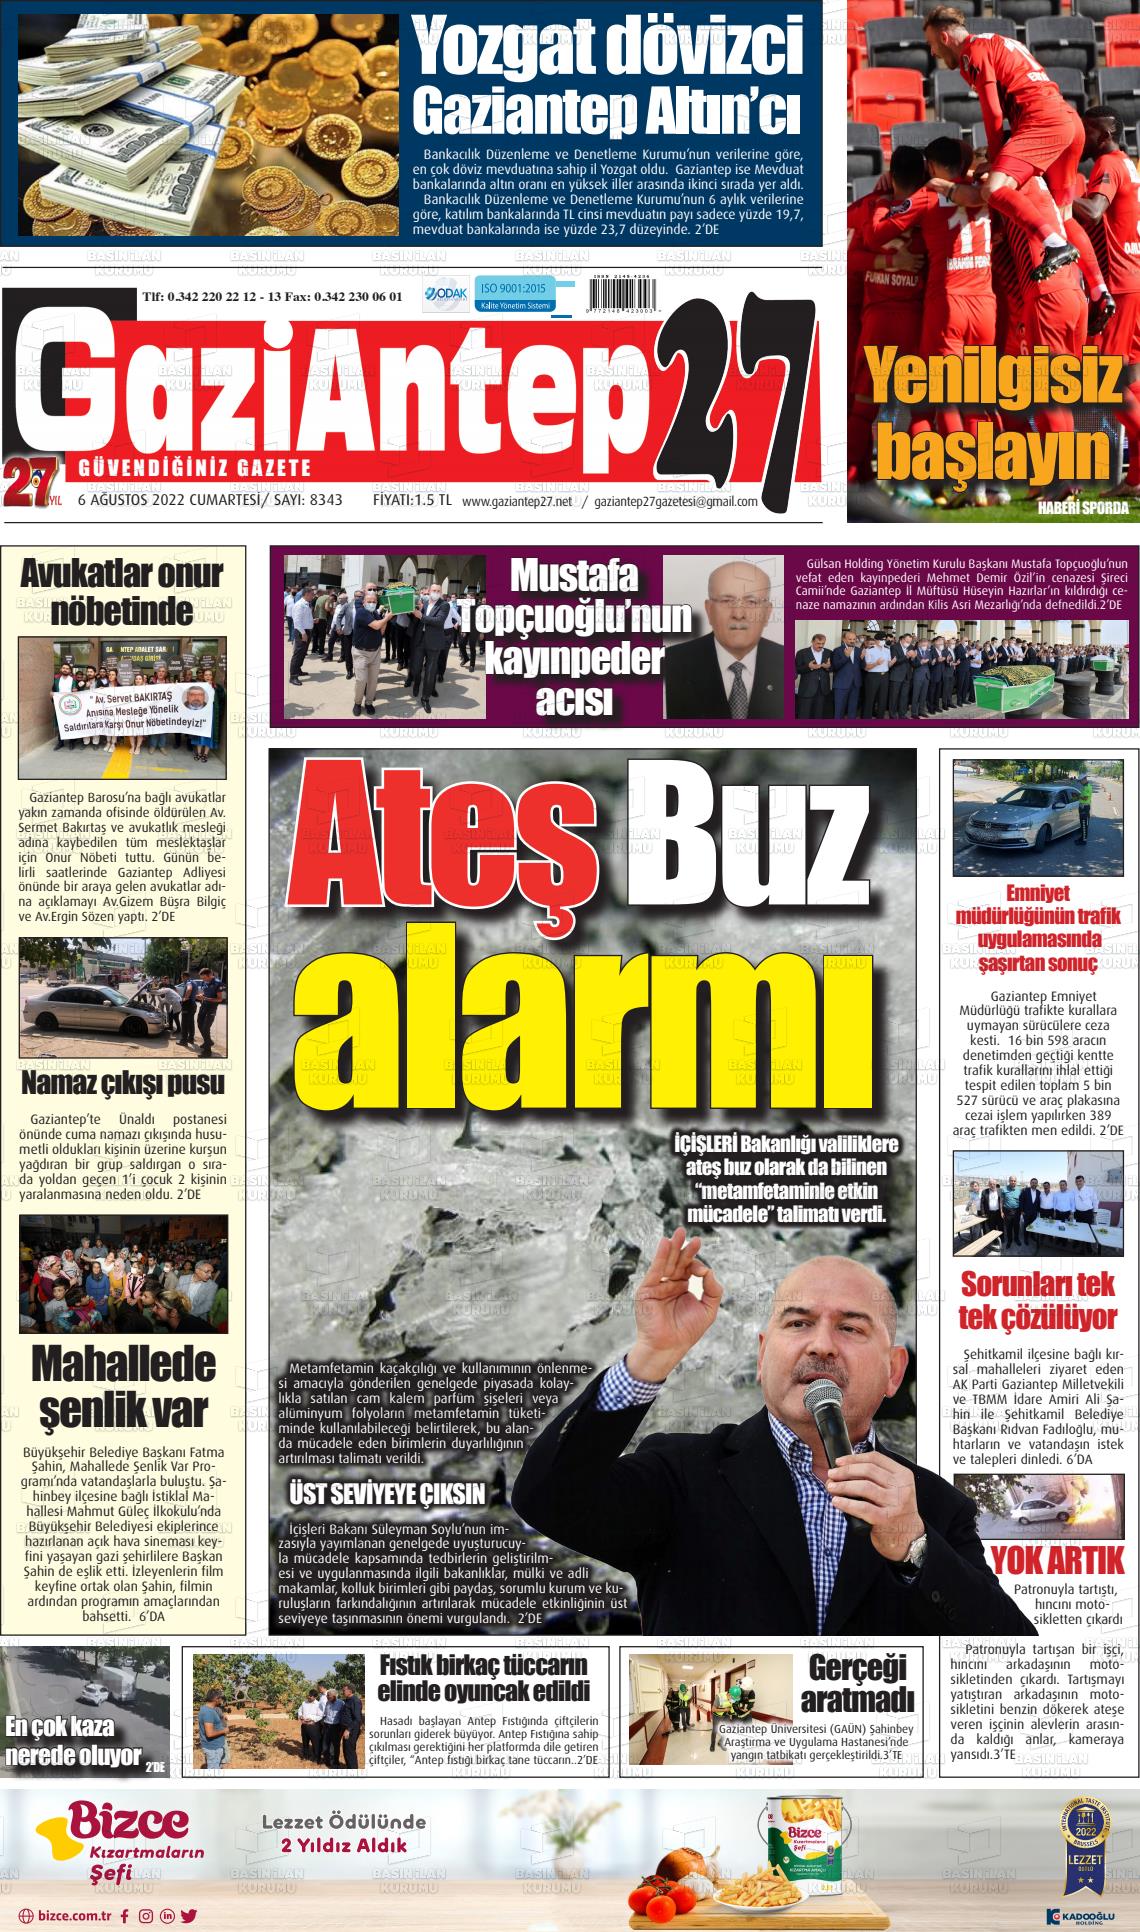 06 Ağustos 2022 Gaziantep 27 Gazete Manşeti